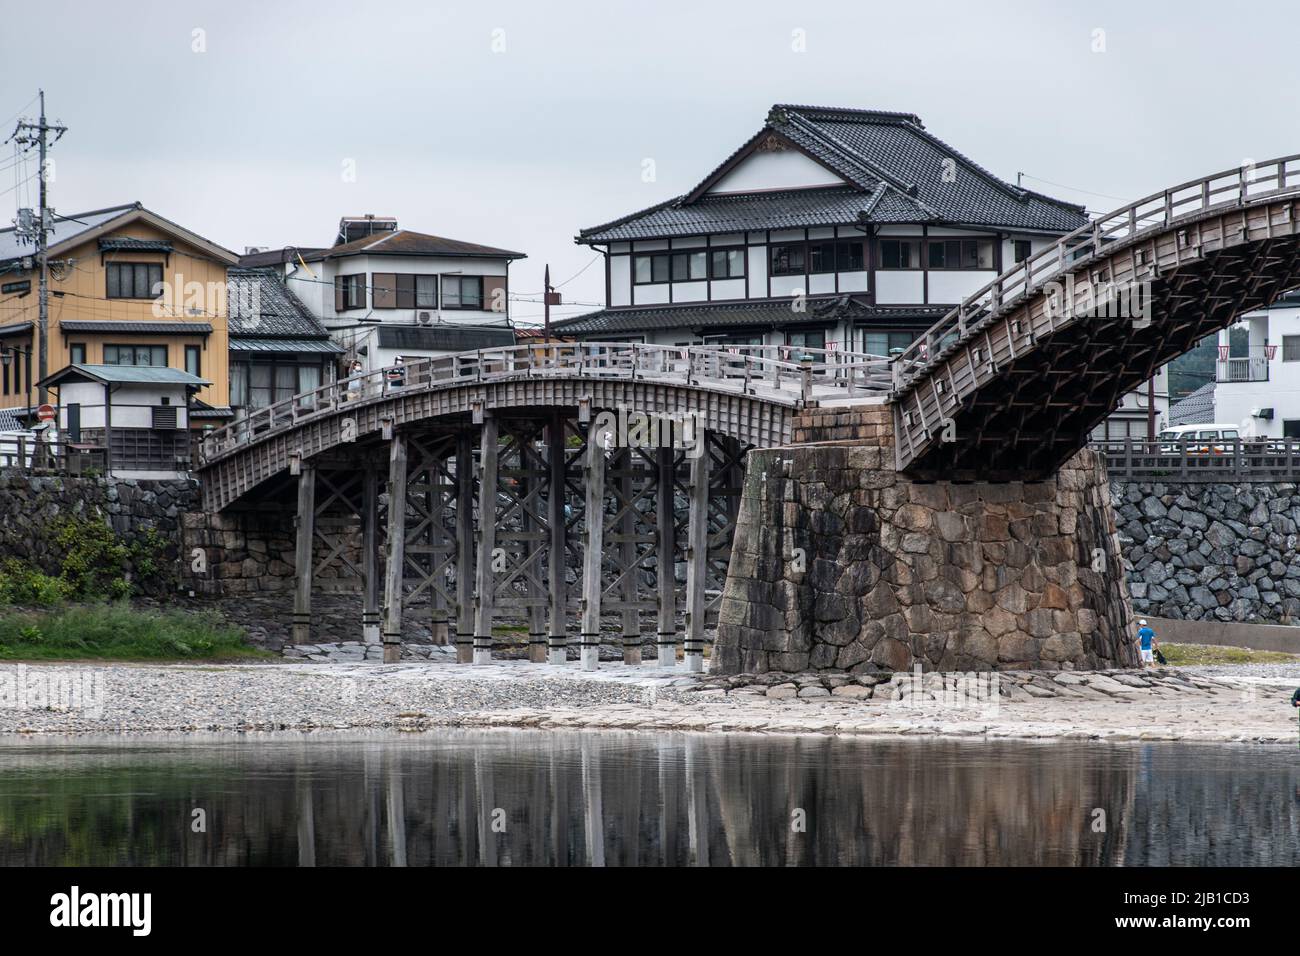 Die Kintai-Brücke (Kintaikyo), eine historische Holzbogenbrücke in Iwakuni, an bewölkten Tagen. Die Brücke wurde 1673 erbaut und überspannt den Nishiki River Stockfoto